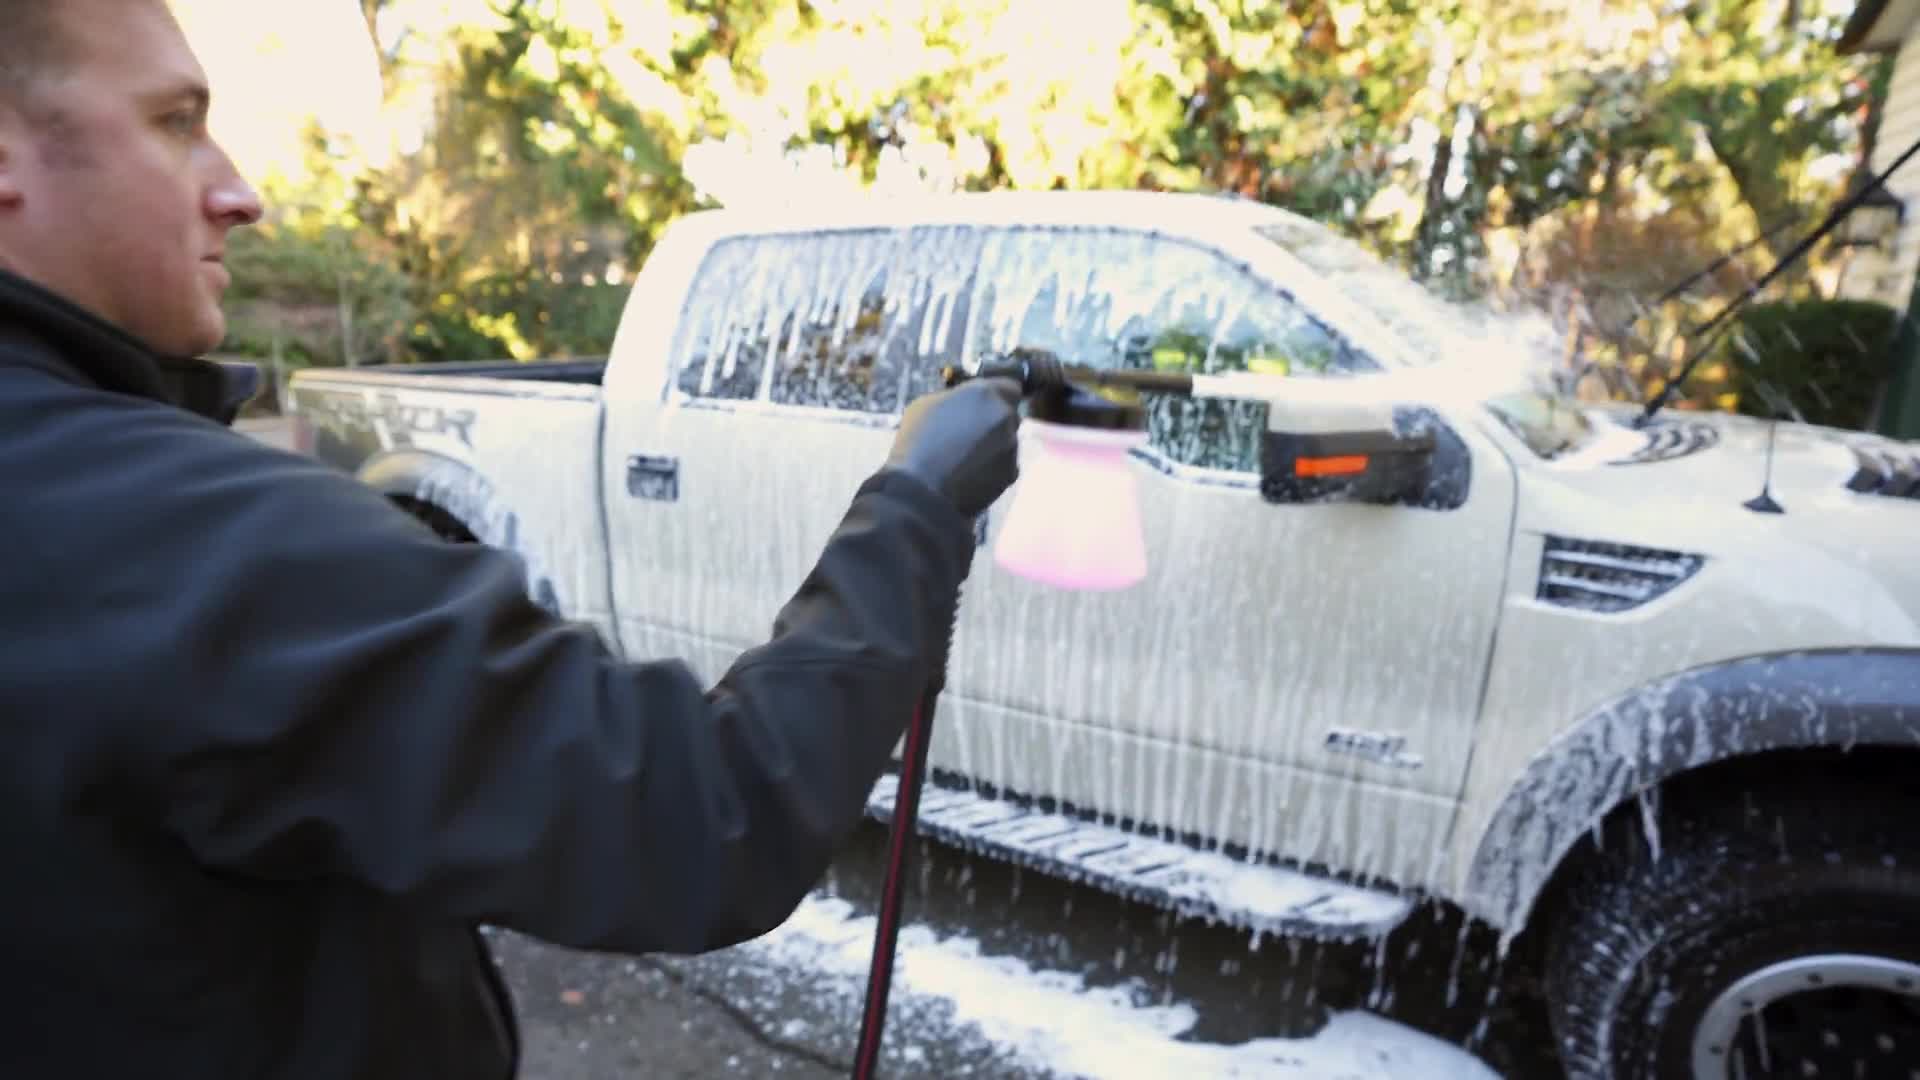 Brilliant Finish Car Wash - High-Gloss Shine - Griot's Garage